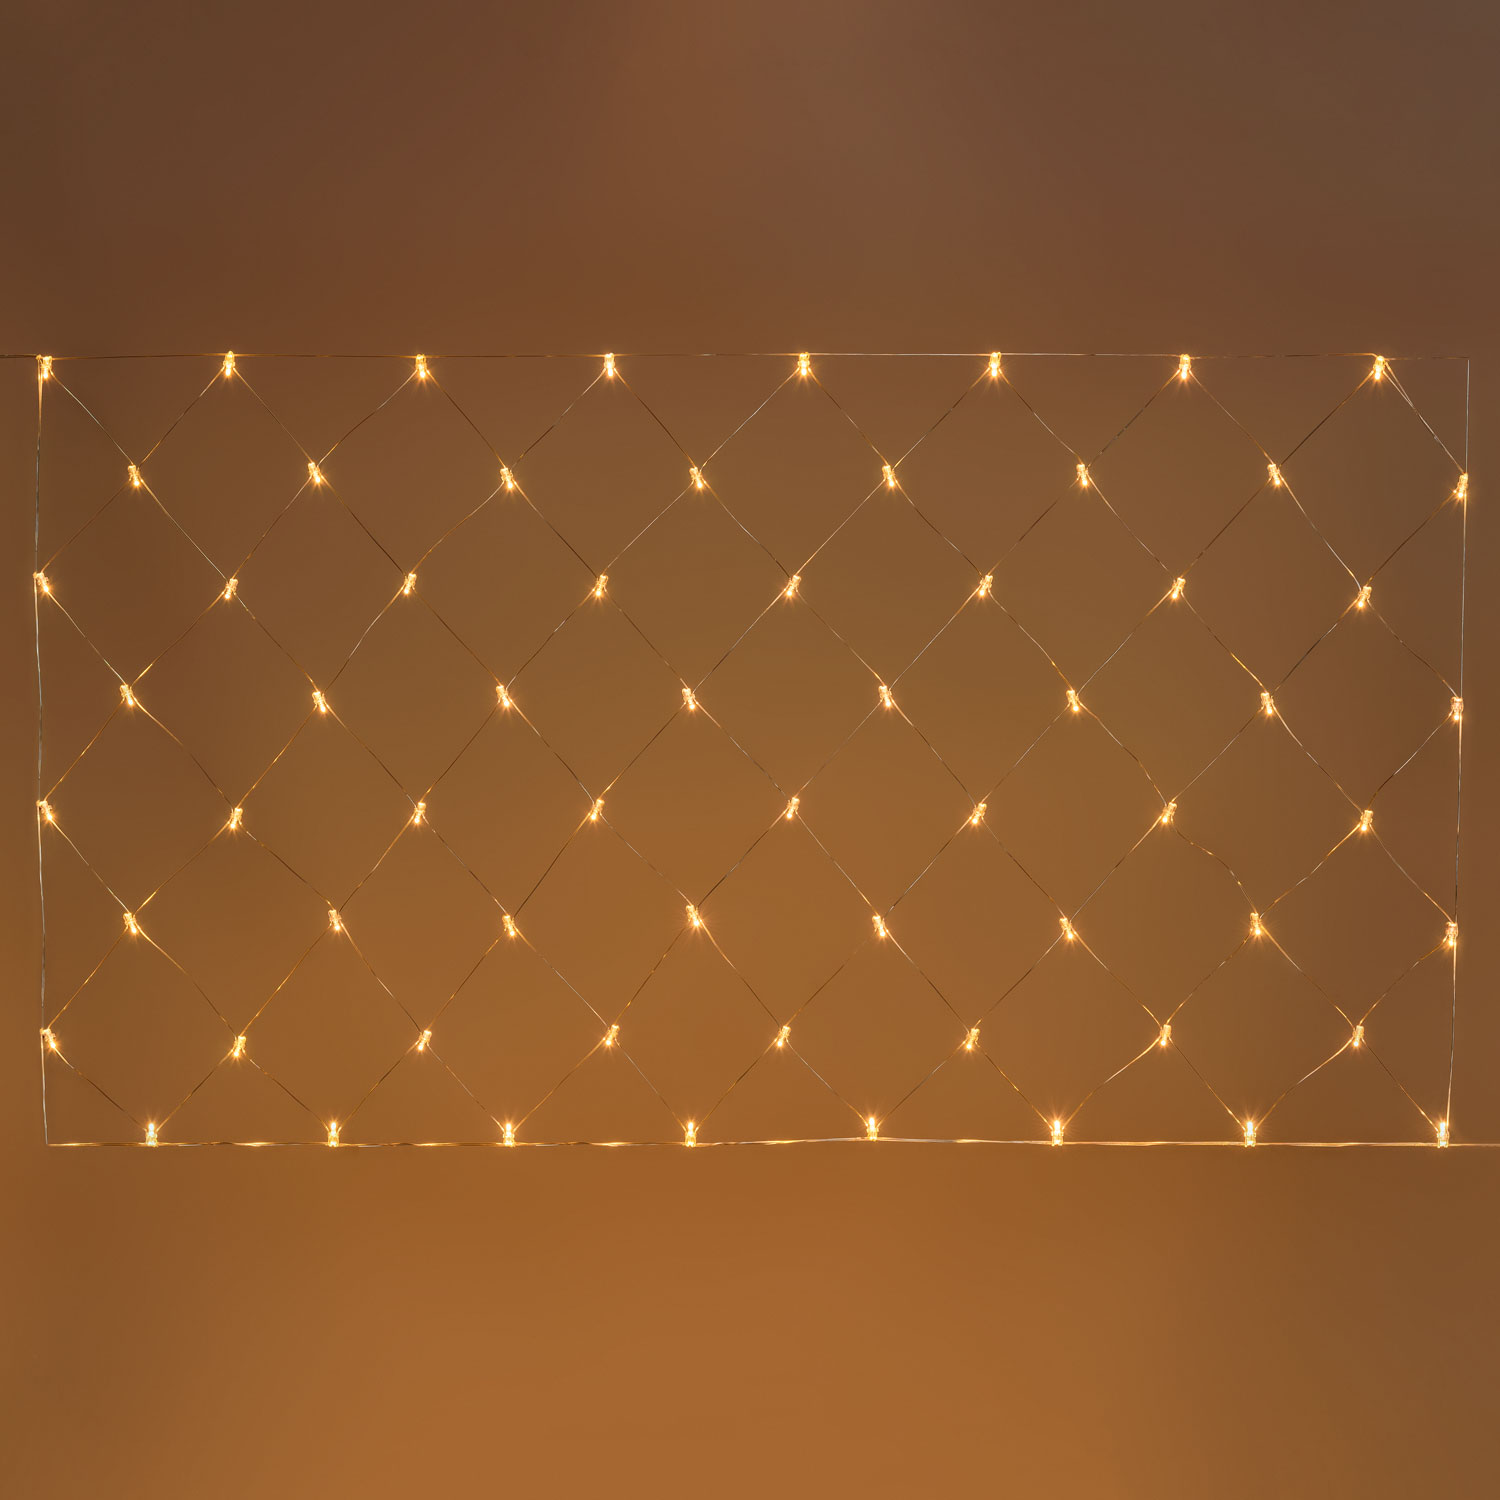 Weihnachtsbeleuchtung für Außen transparentes Kabel mit Lichteffekt Vorhang 3 x 1,52 m 182 LEDs warmweiß Weihnachtslichter 